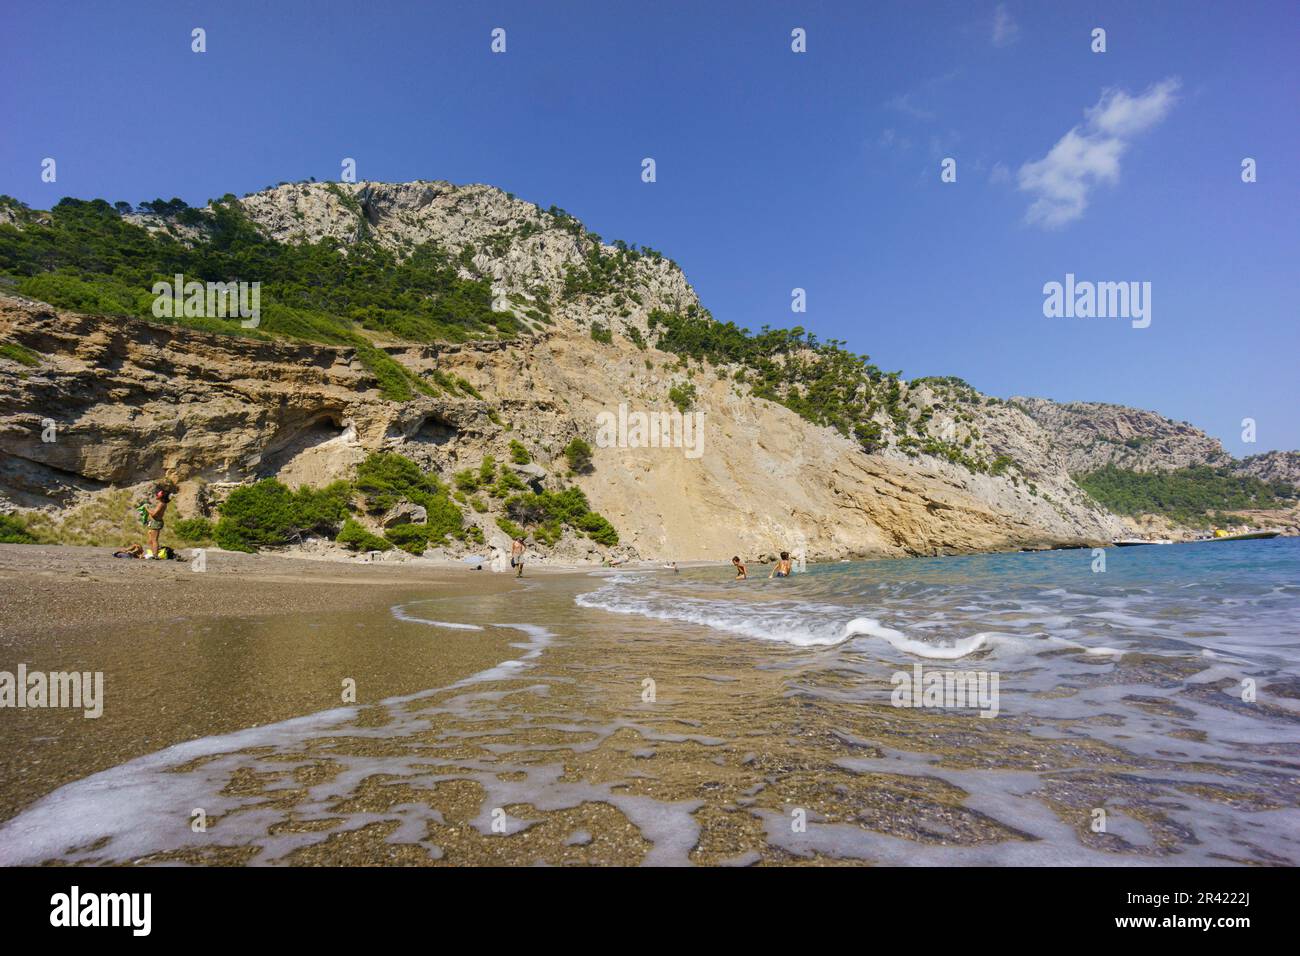 playa de Es Coll Baix, a los pies del Puig de Sa Talaia, Alcudia,islas baleares, Spain. Stock Photo